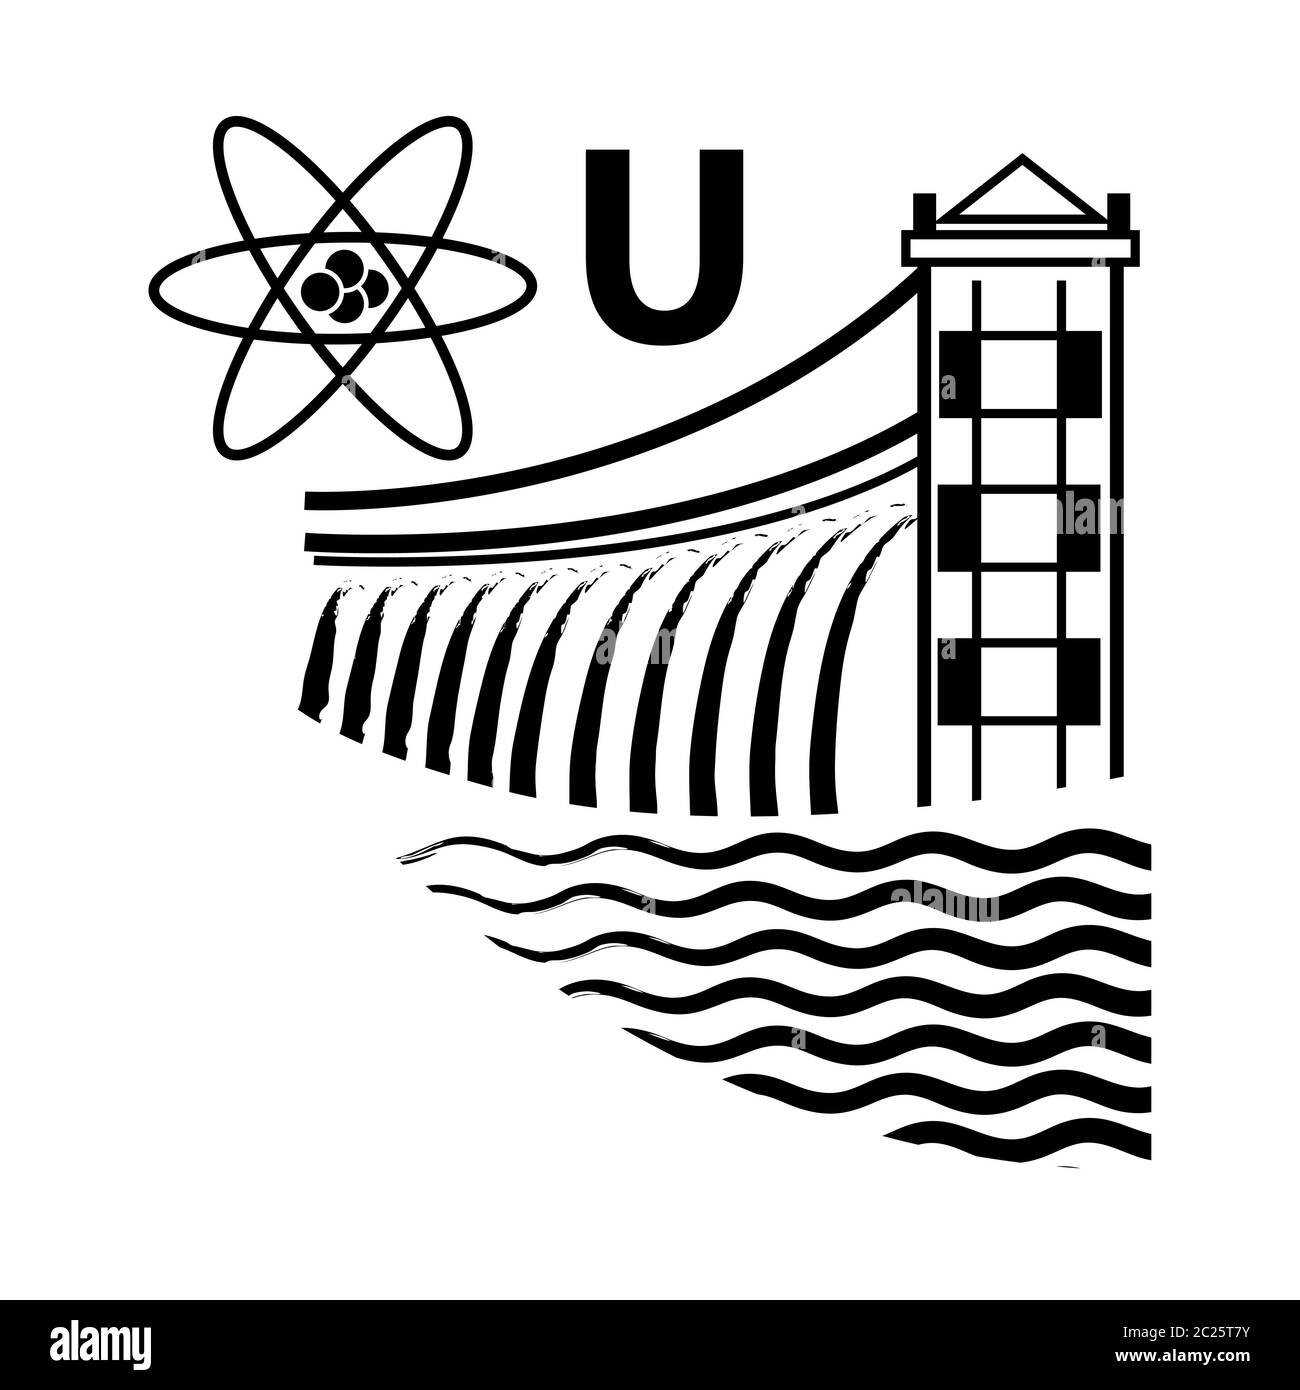 Centrales nucléaires et hydroélectriques. Emblème de la technologie et de l'industrie. Banque D'Images